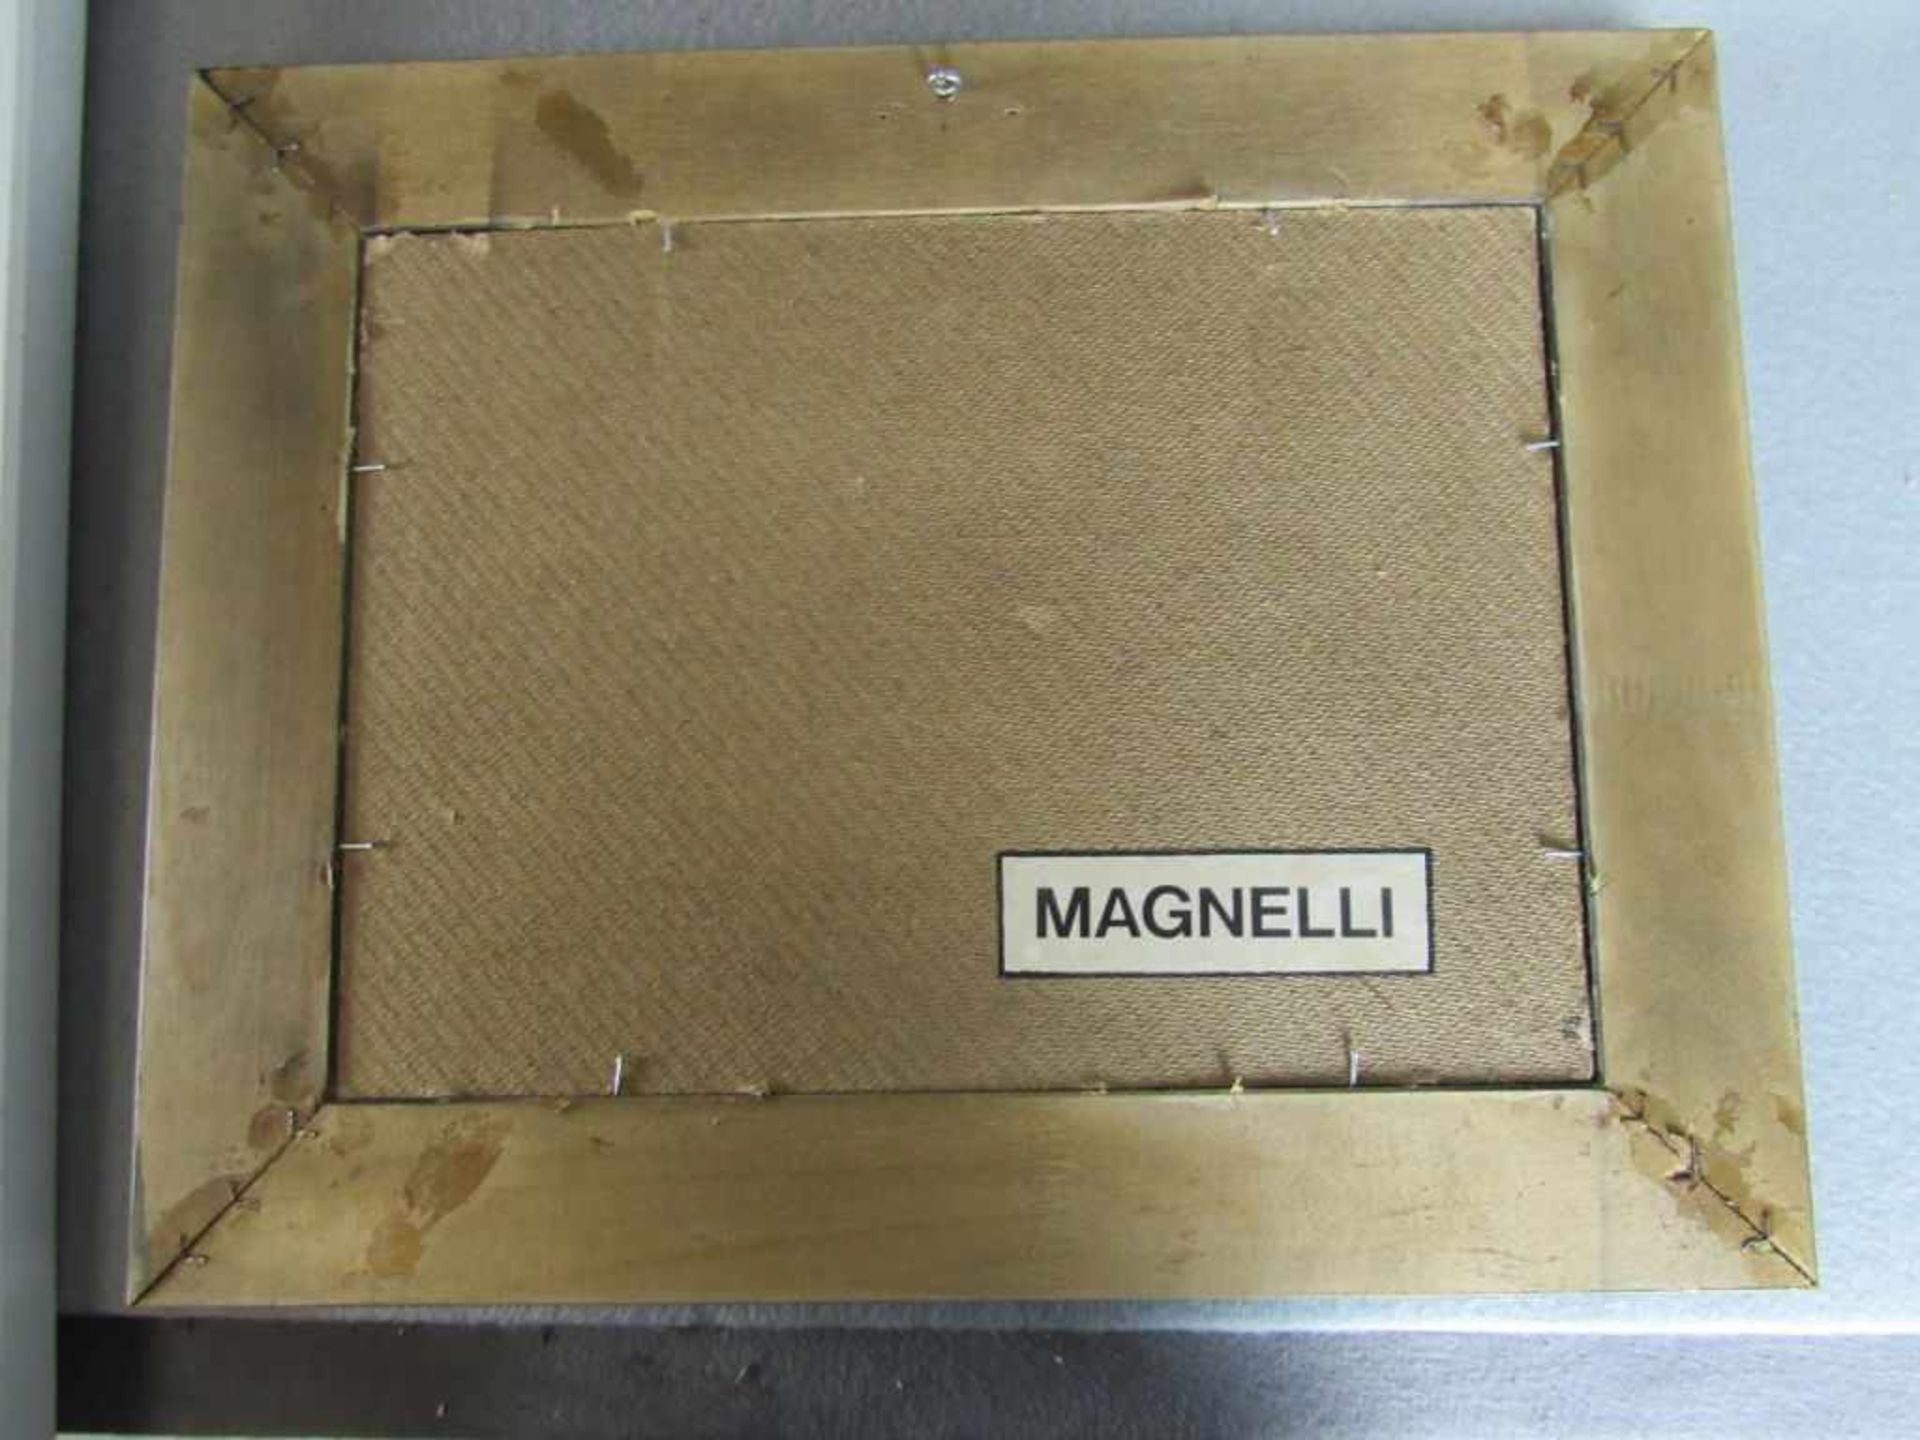 zeichnung mischtechnik bezeichnet magnelli ca. 30 cmx 20cm mit rahmen ca. 48x38 cm - Image 3 of 3